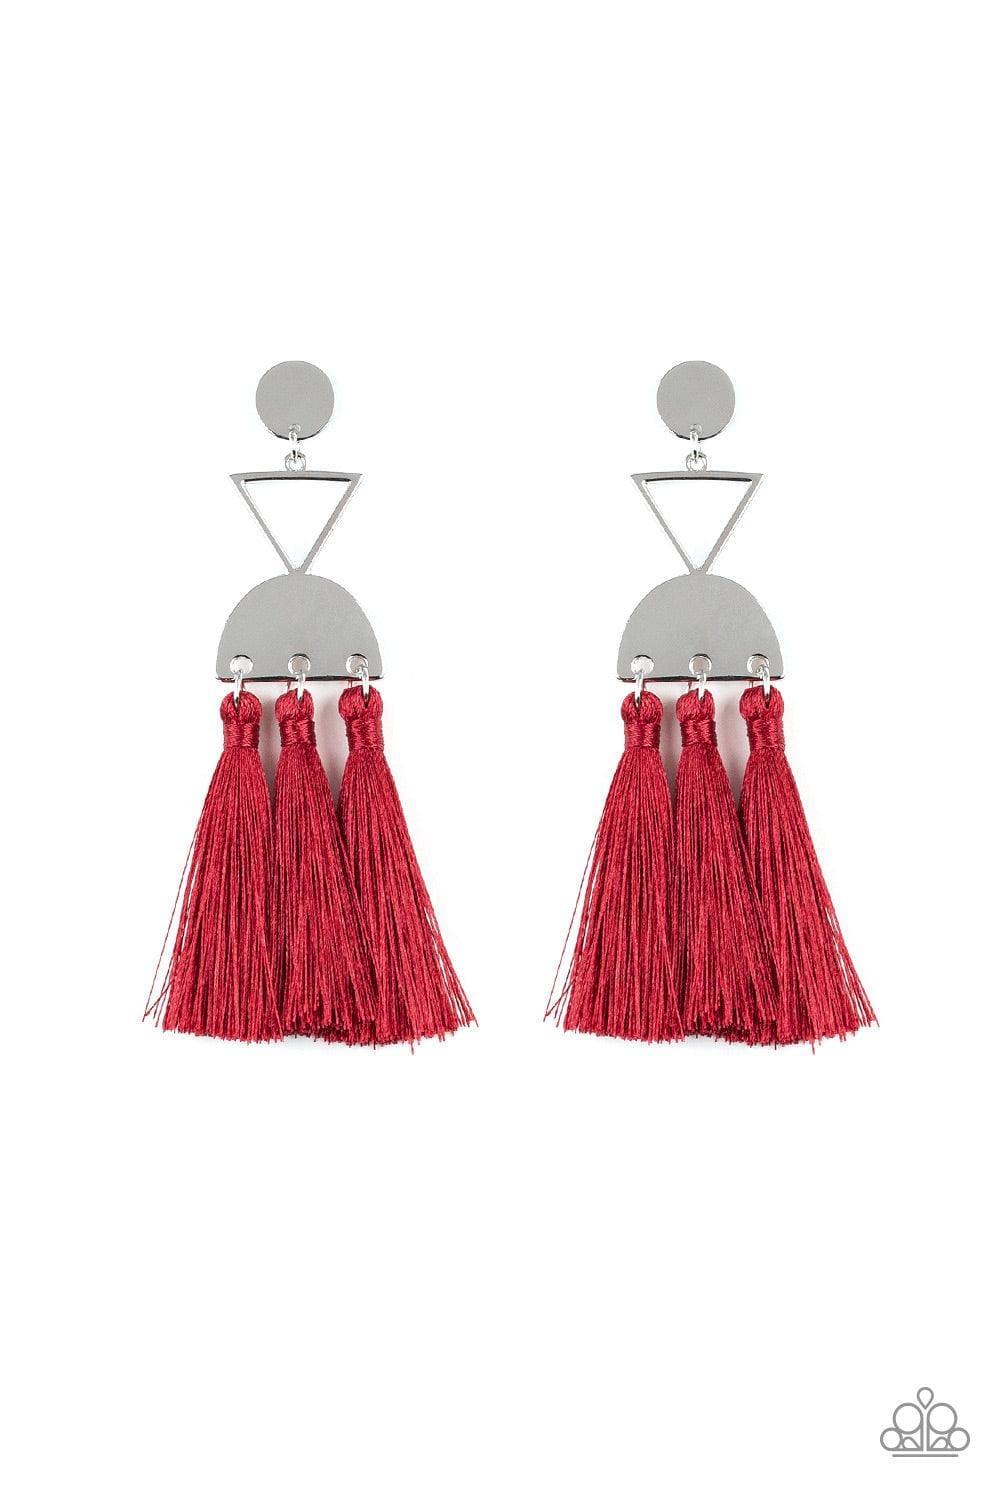 Paparazzi Accessories - Tassel Trippin - Red Earrings - Bling by JessieK